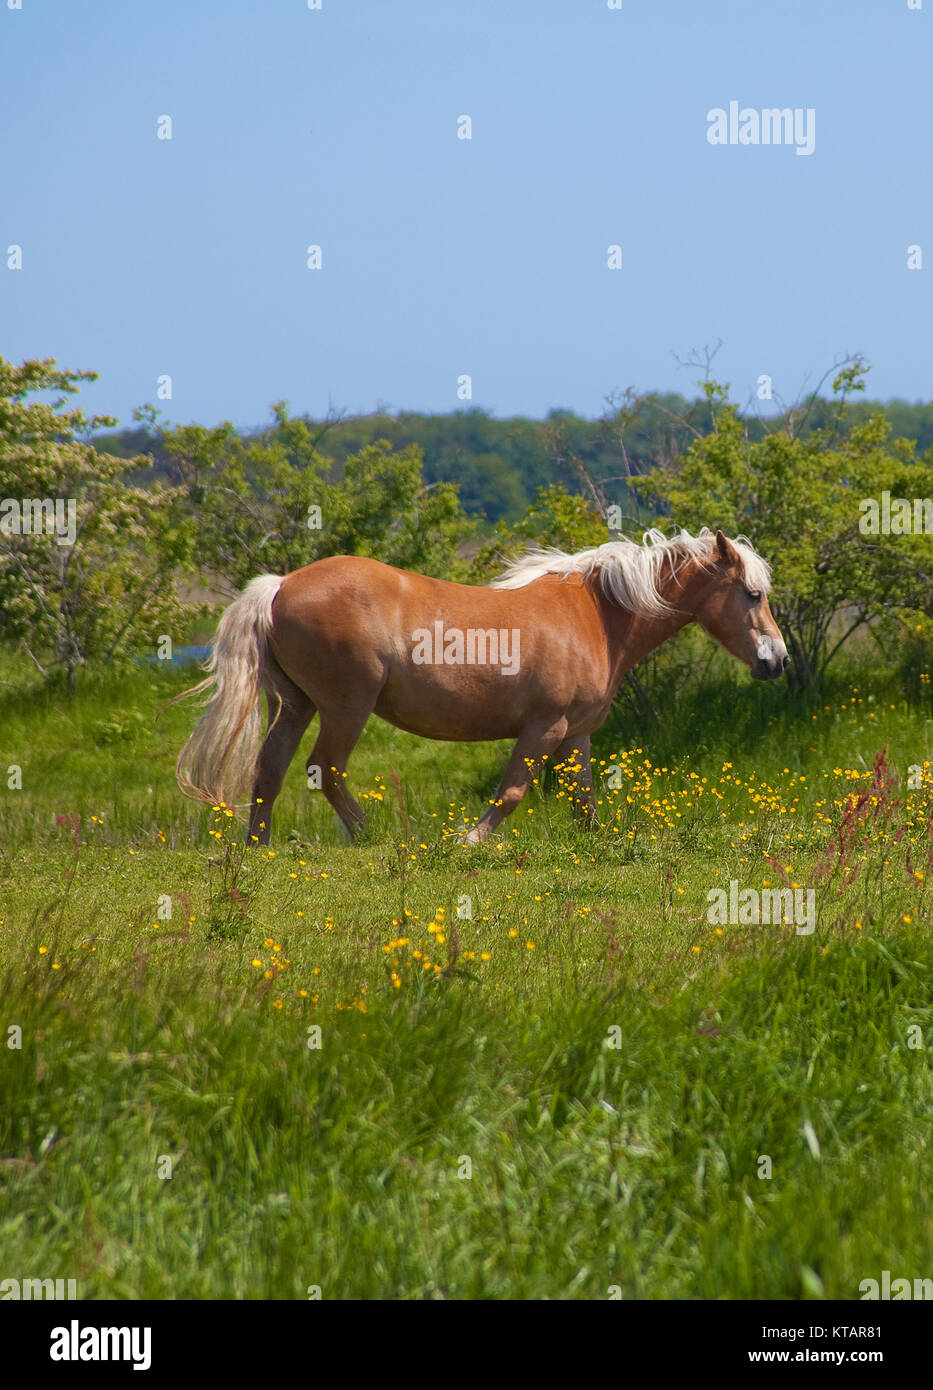 Horse on field, National park Vorpommersche Boddenlandschaft at Ummanz island, Ruegen island, Mecklenburg-Western Pomerania, Baltic Sea, Germany, Stock Photo